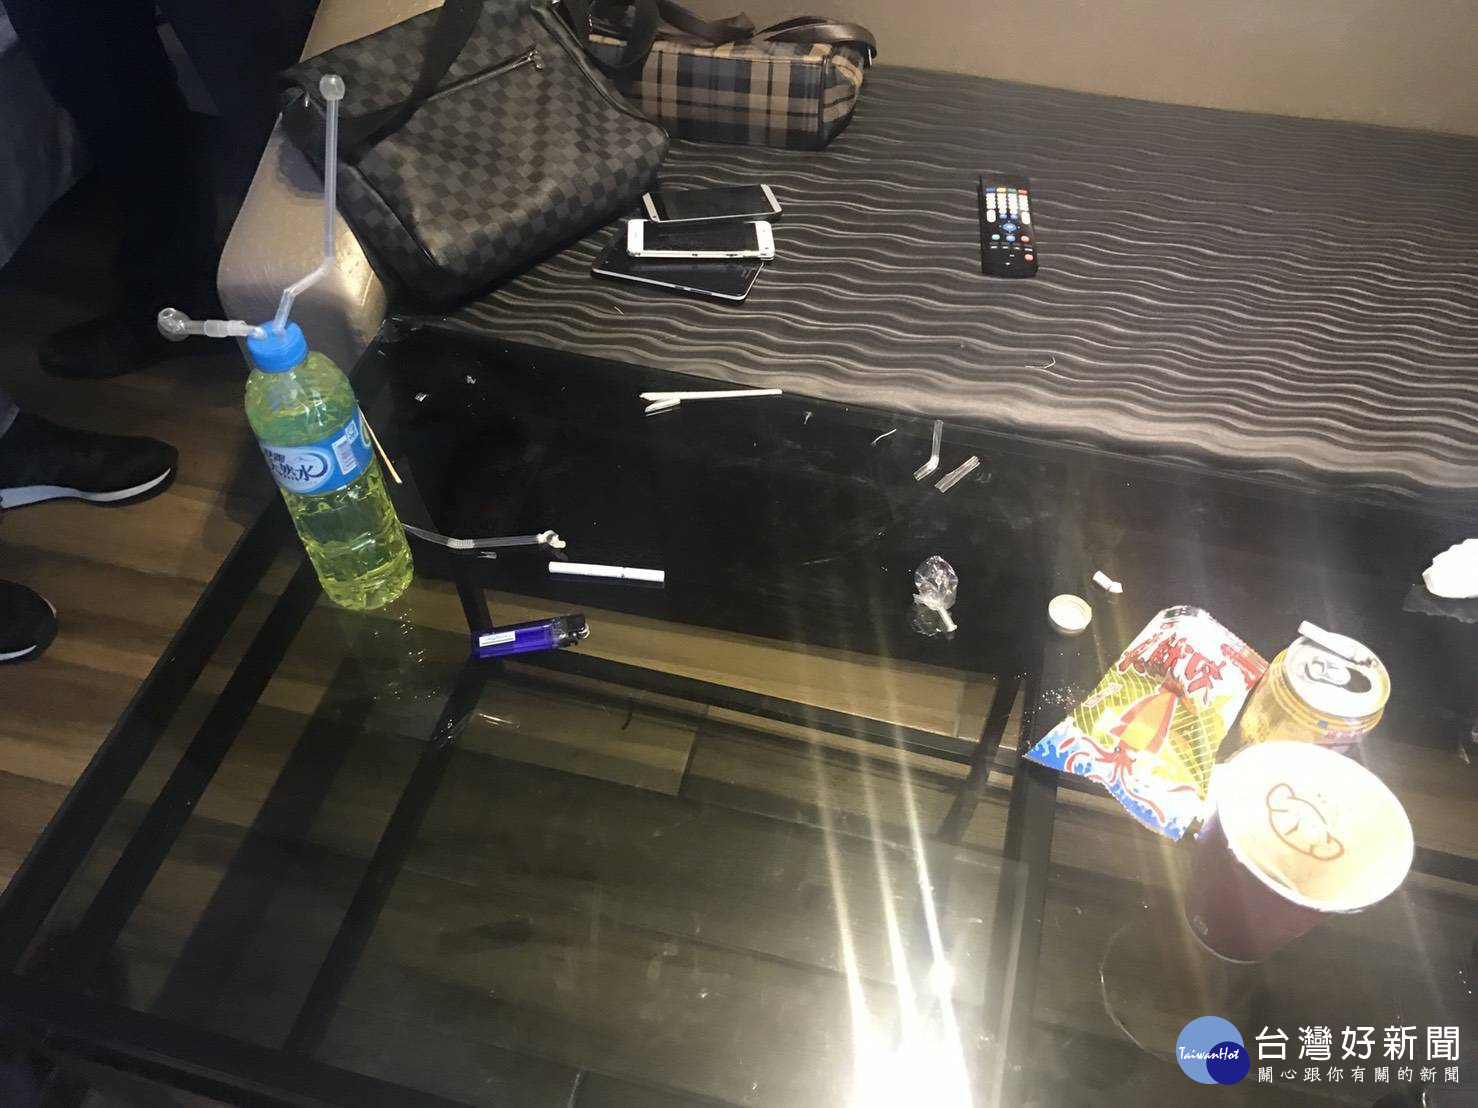 警方在床邊發現1組毒品吸食器。 